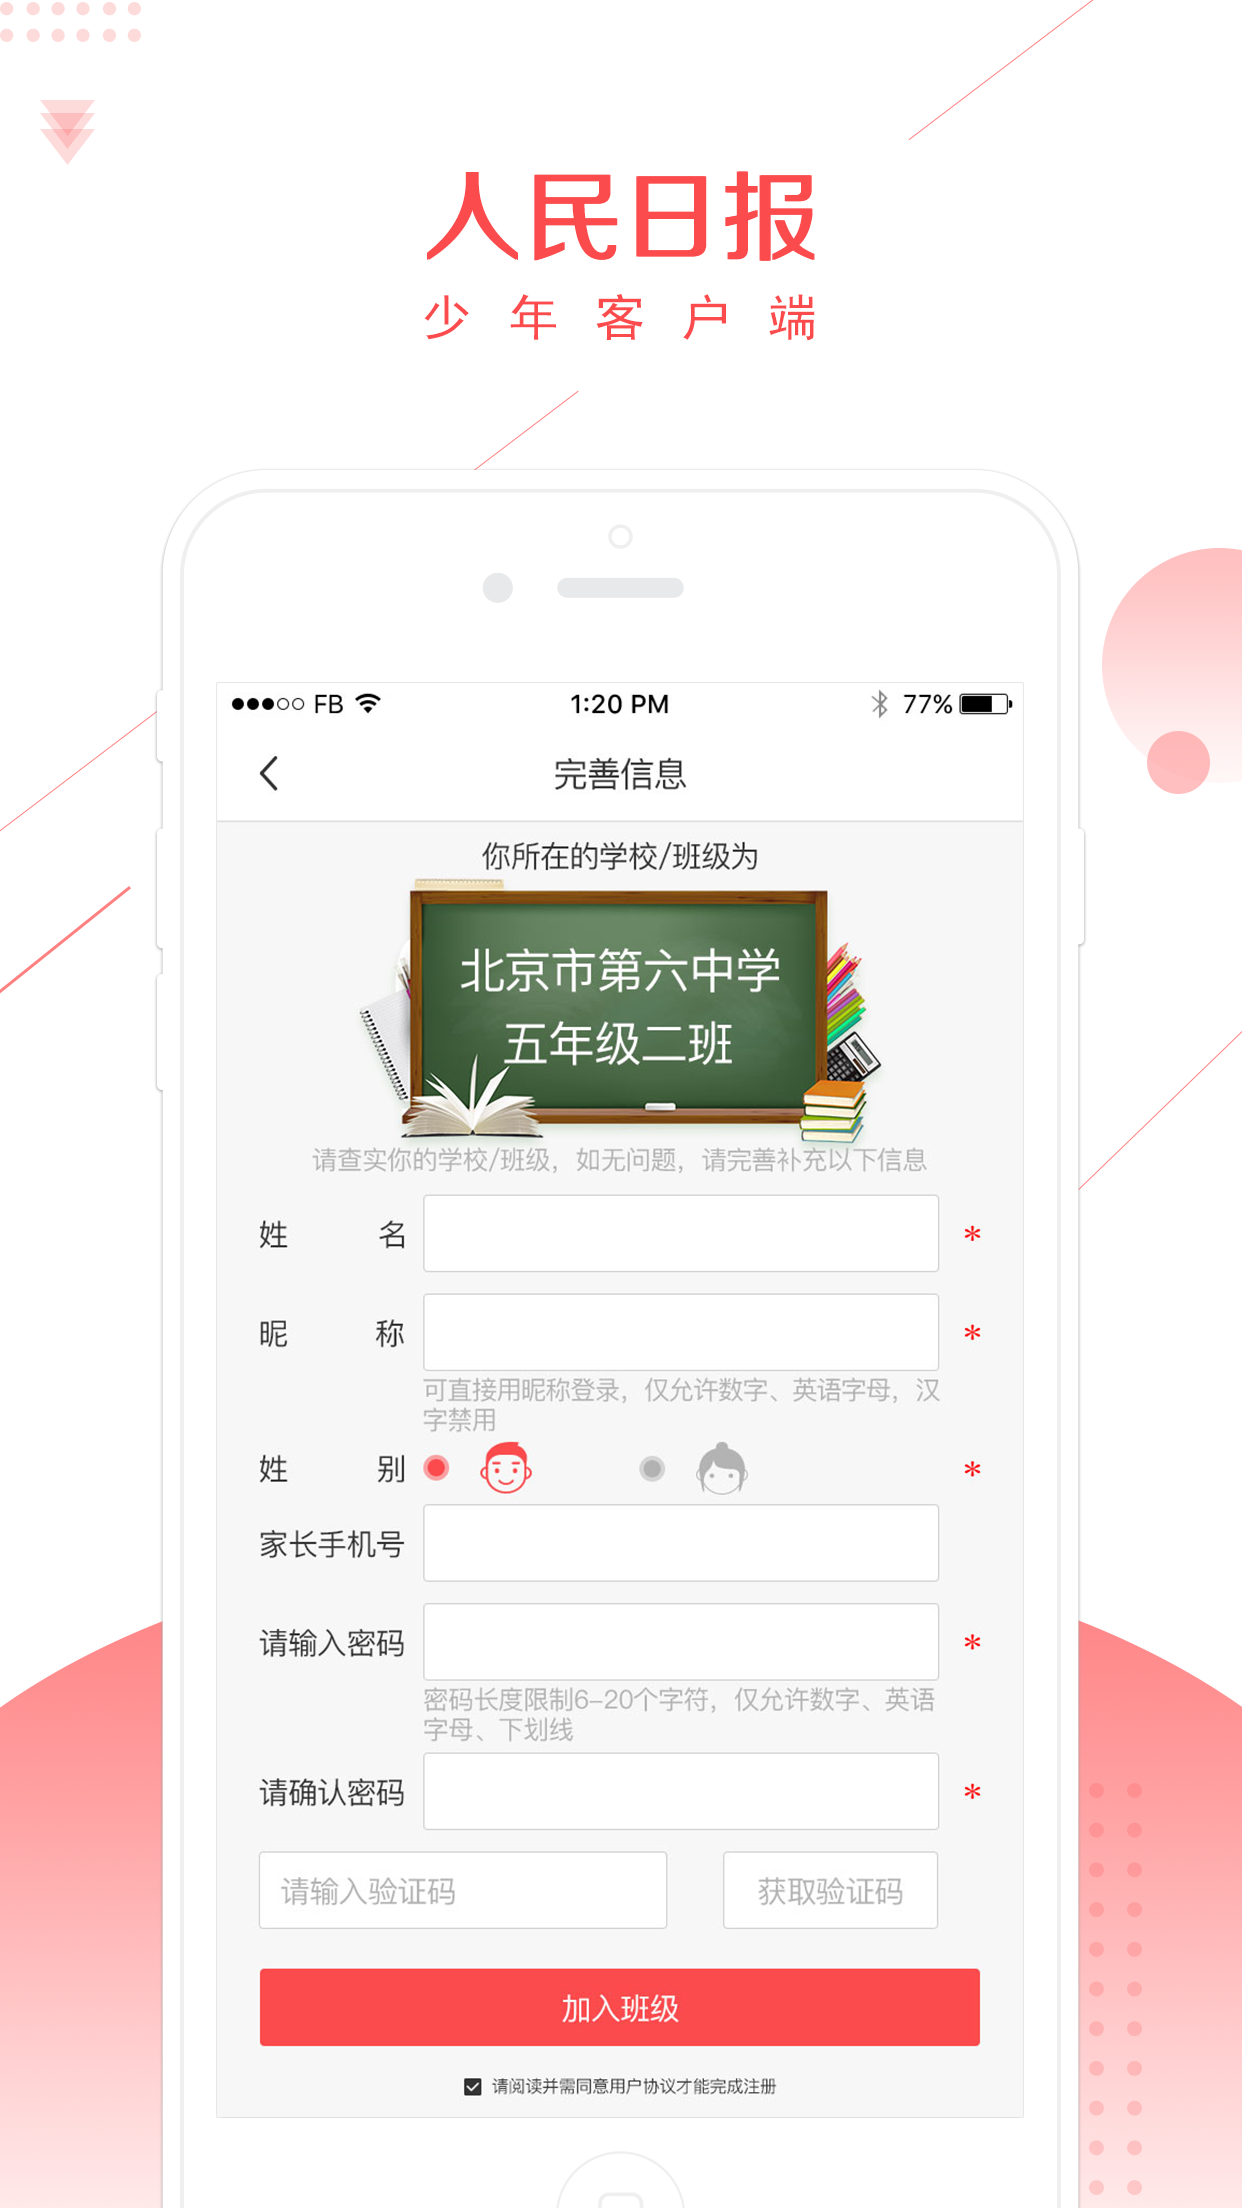 人民日报少年王手机客户端app平台登录下载图片1